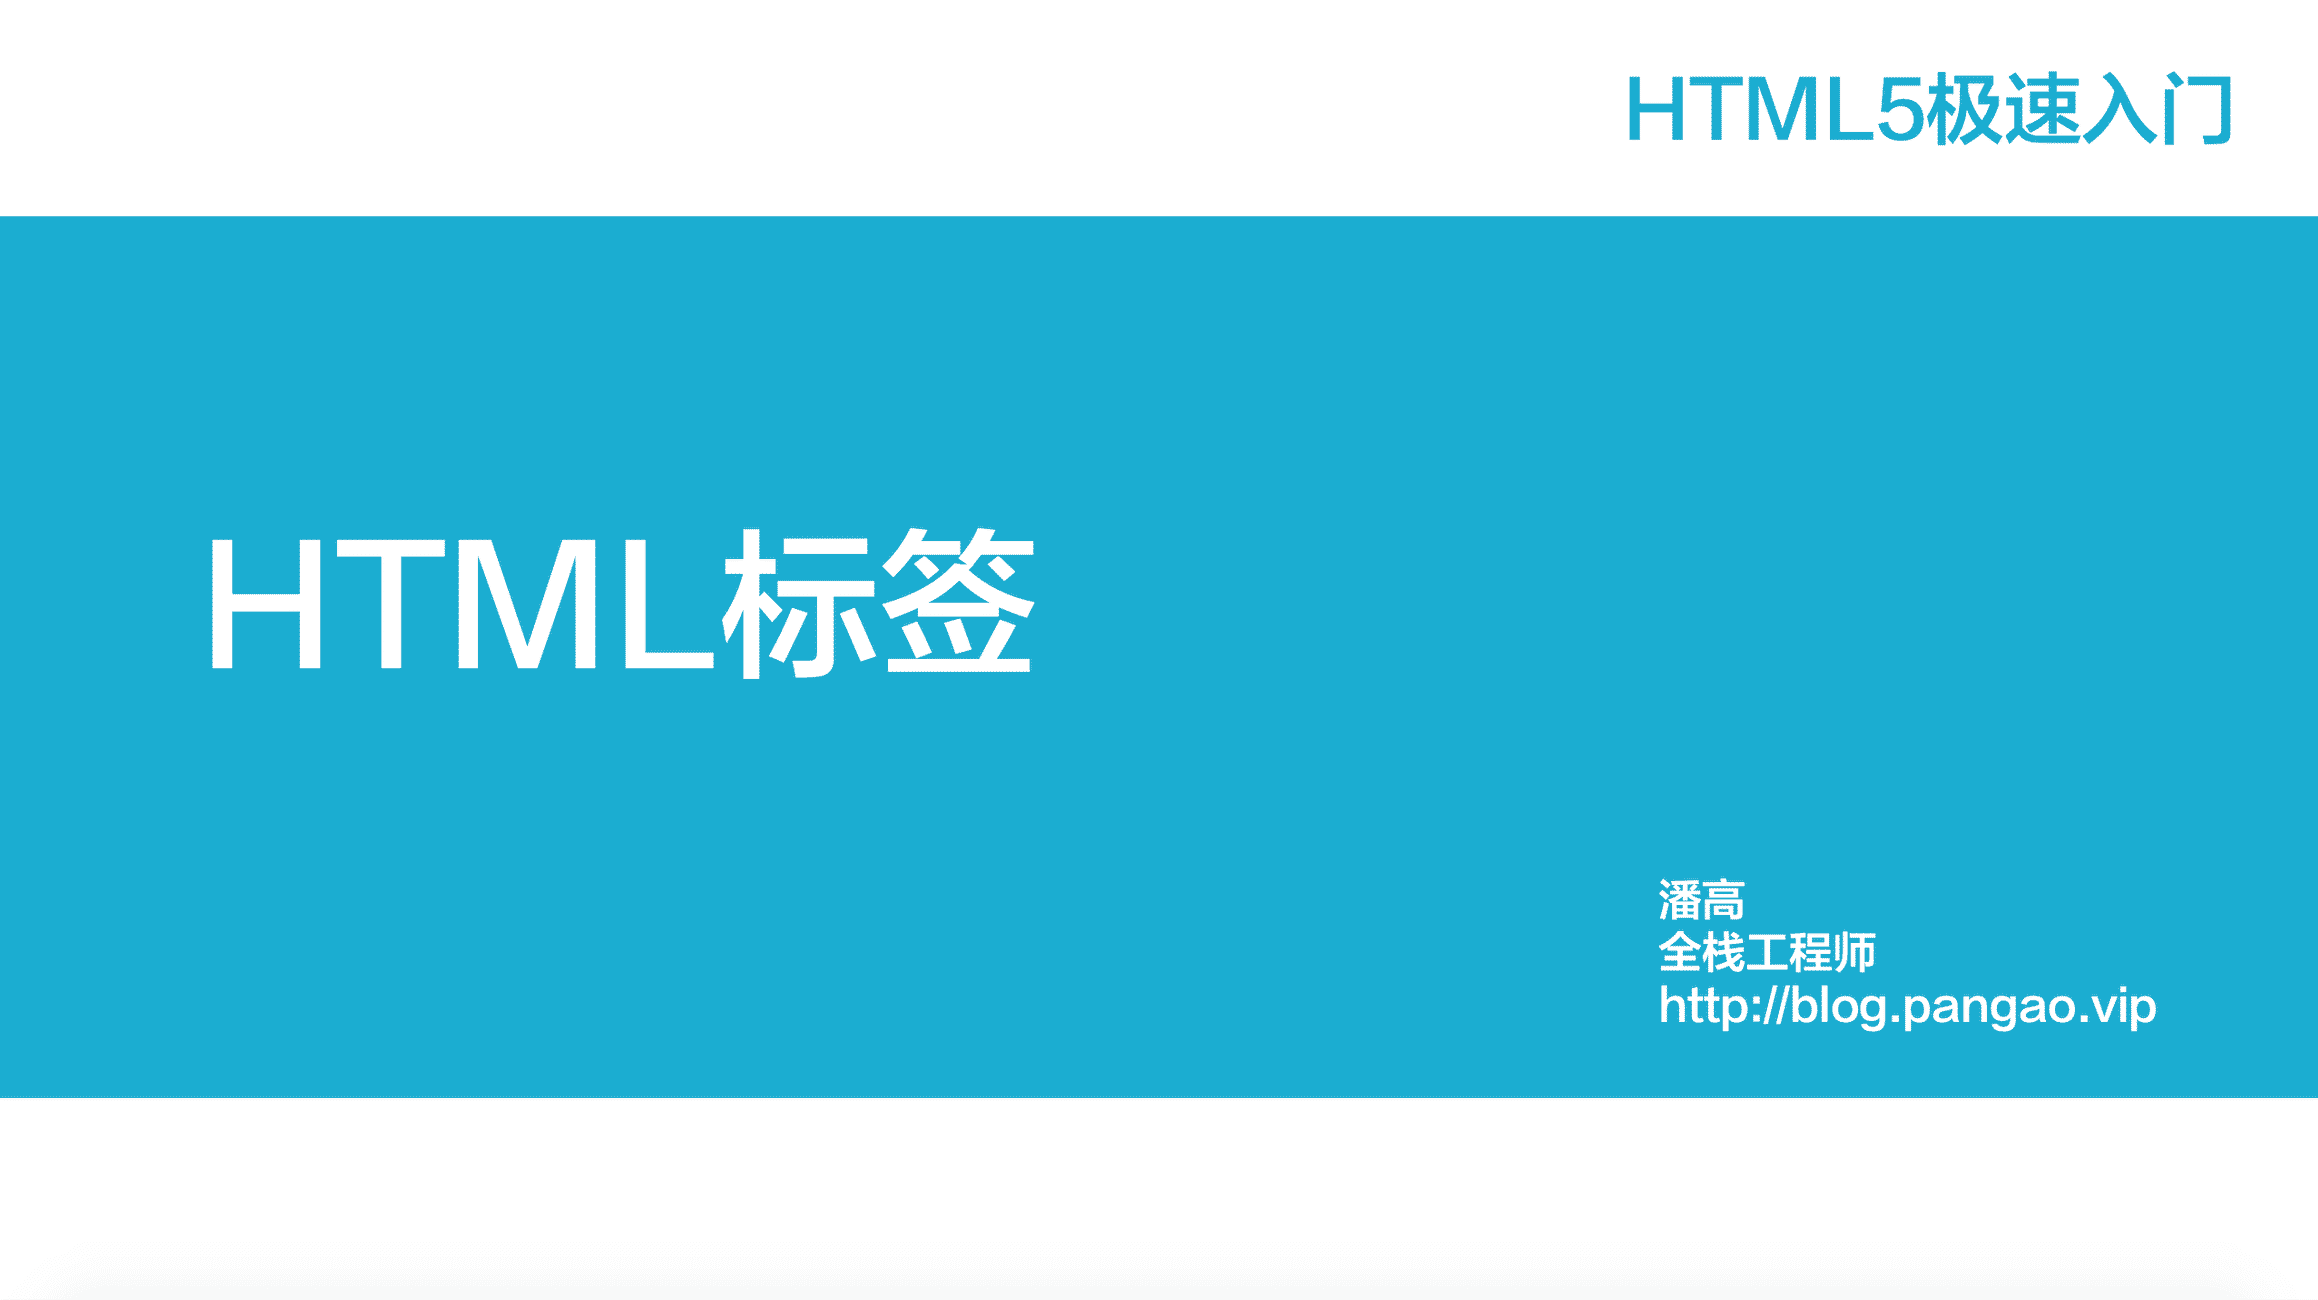 HTML5标签-HTML5极速入门